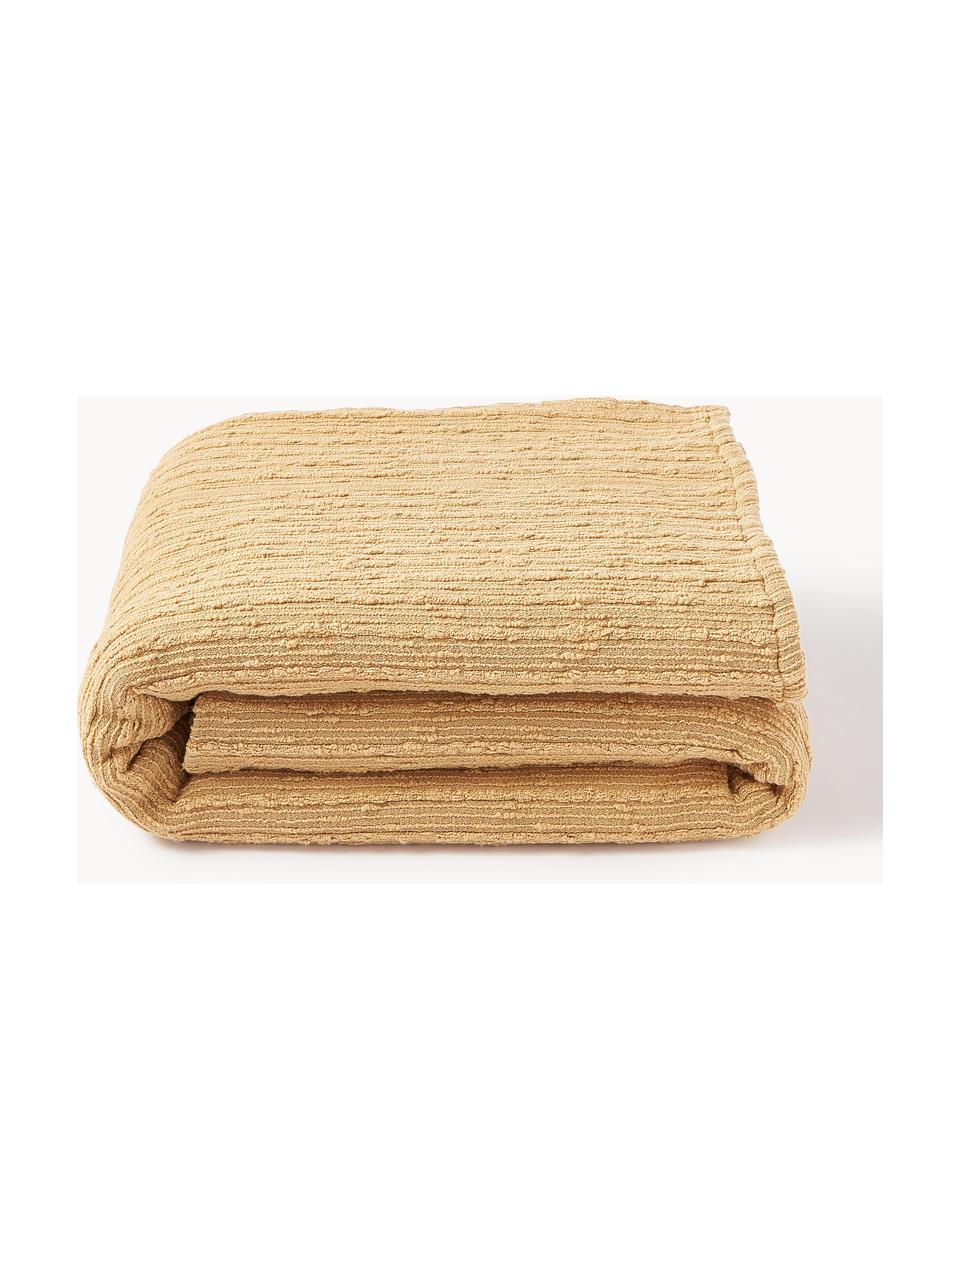 Couvre-lit en tissu bouclé Thomassin, Tissu bouclé (95 % coton, 5 % polyester)

Le bouclé est un matériau qui se caractérise par sa structure incurvée irrégulière. La surface caractéristique est créée par des boucles tissées de fils de différents types, qui confèrent au tissu une structure unique. La structure bouclée a un effet à la fois isolant et moelleux, ce qui rend le tissu particulièrement douillet

Le matériau est certifié STANDARD 100 OEKO-TEX®, 4265CIT, CITEVE, Jaune moutarde, larg. 230 x long. 260 cm (pour lits jusqu'à 180 x 200 cm)